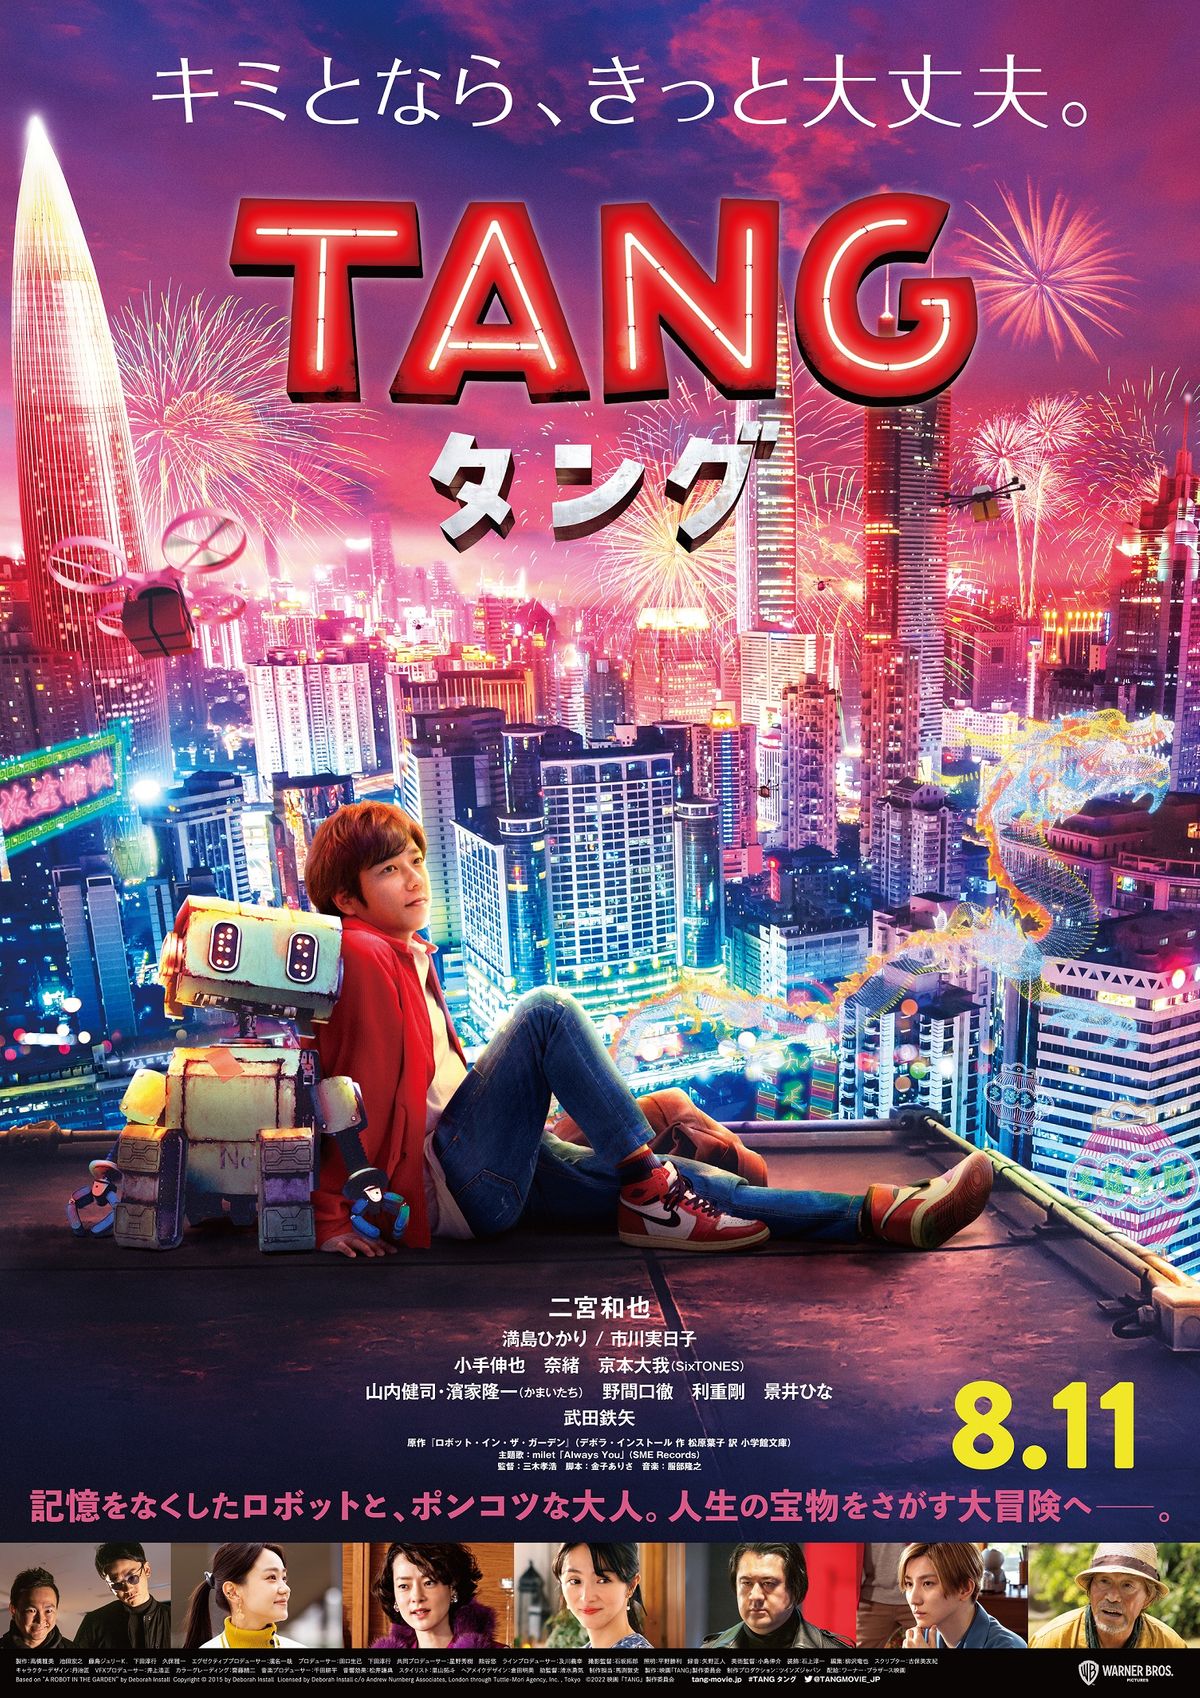 二宮和也の主演映画『TANG タング』 北米最大級の映画祭に出品決定